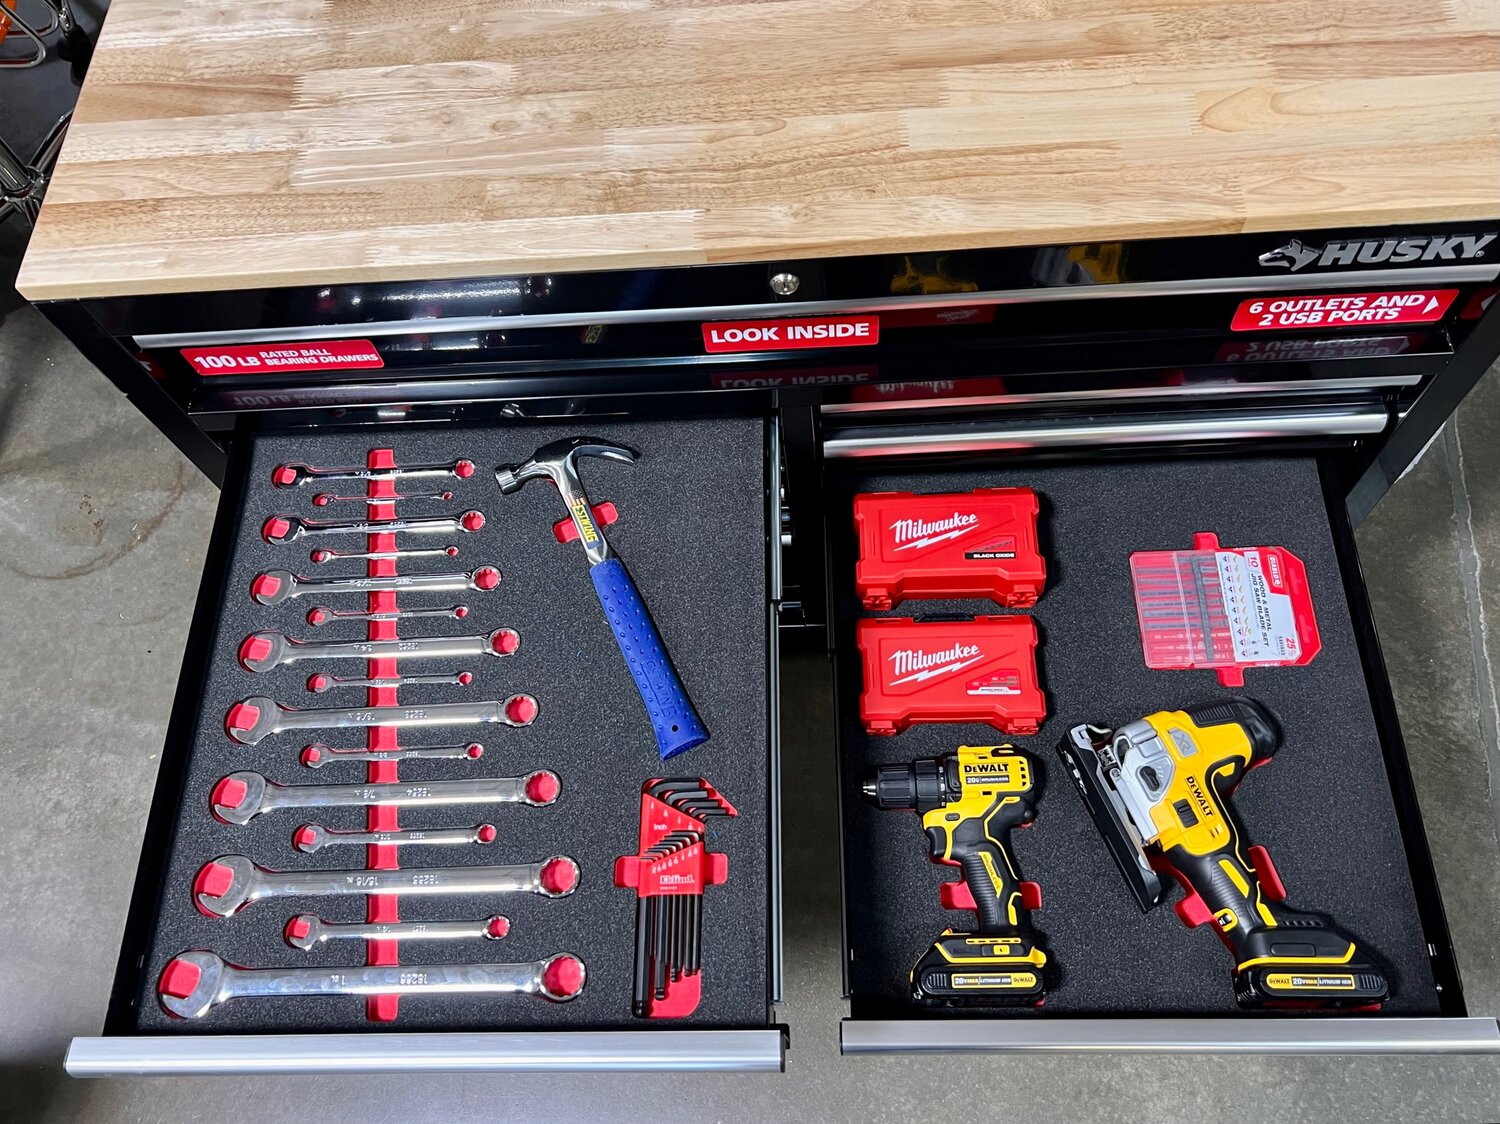 1st Maker Space Elementary Tool Kit